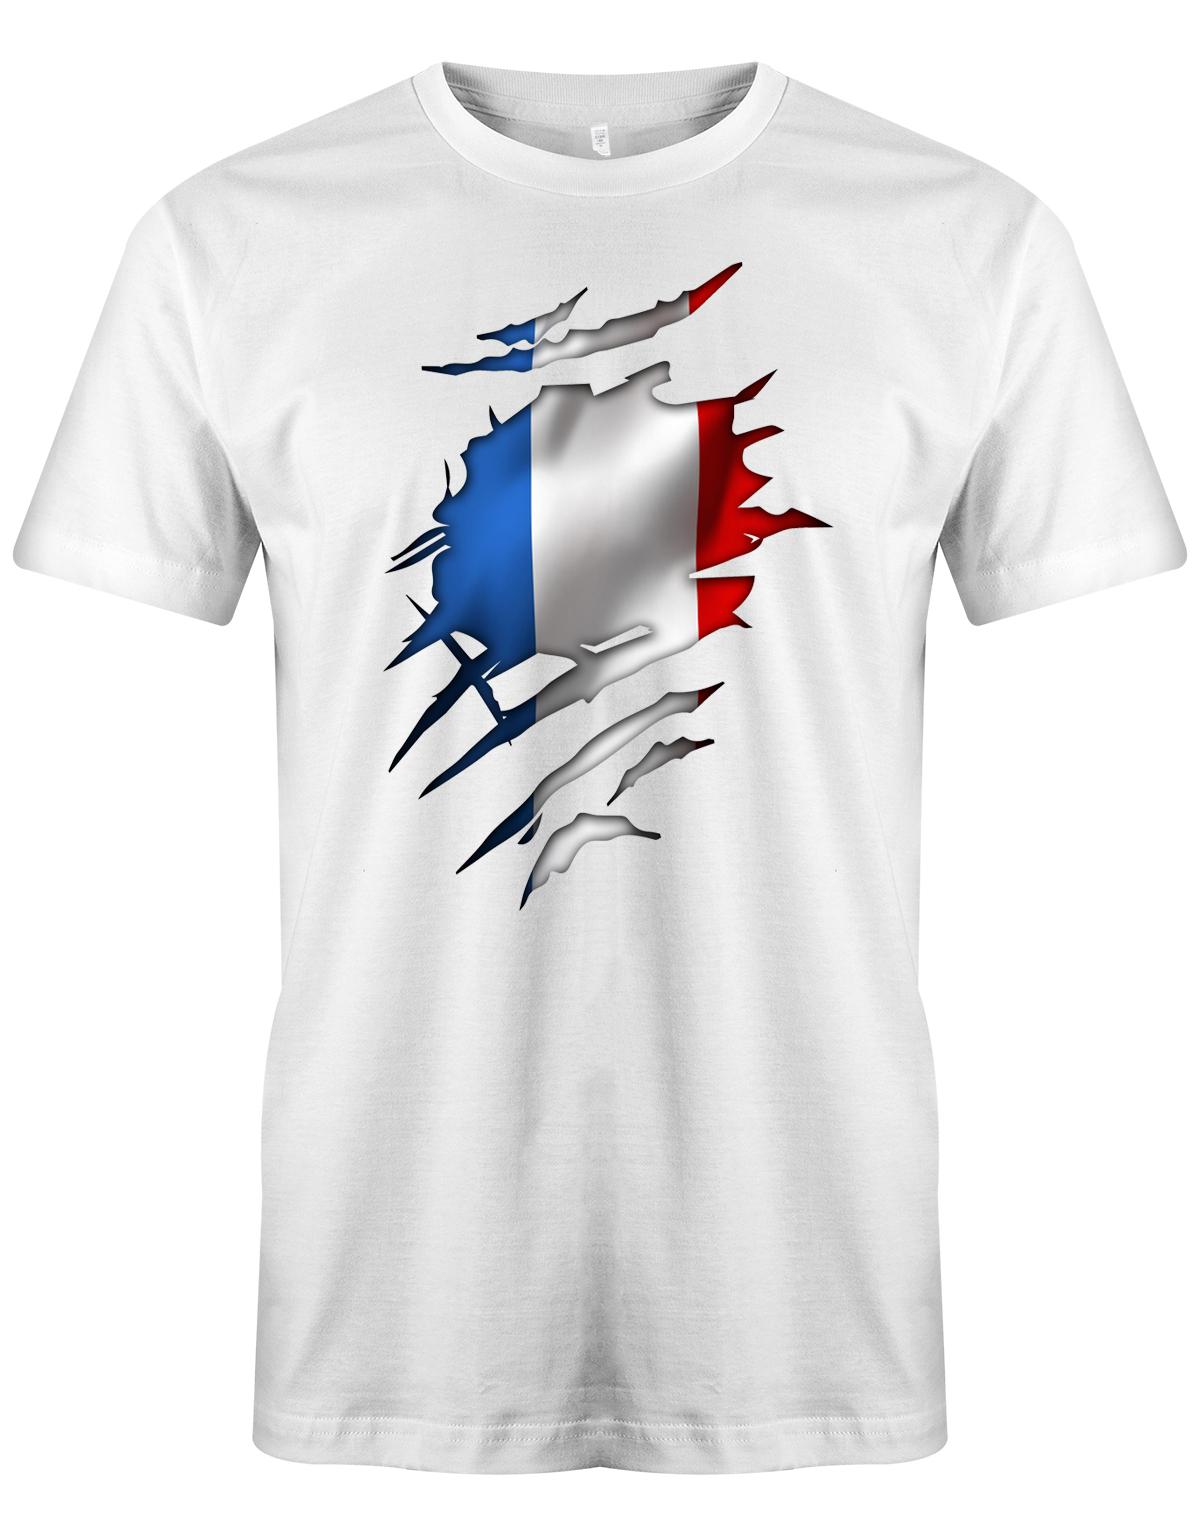 Aufgerissen-Frankreich-Herren-Shirt-Weiss